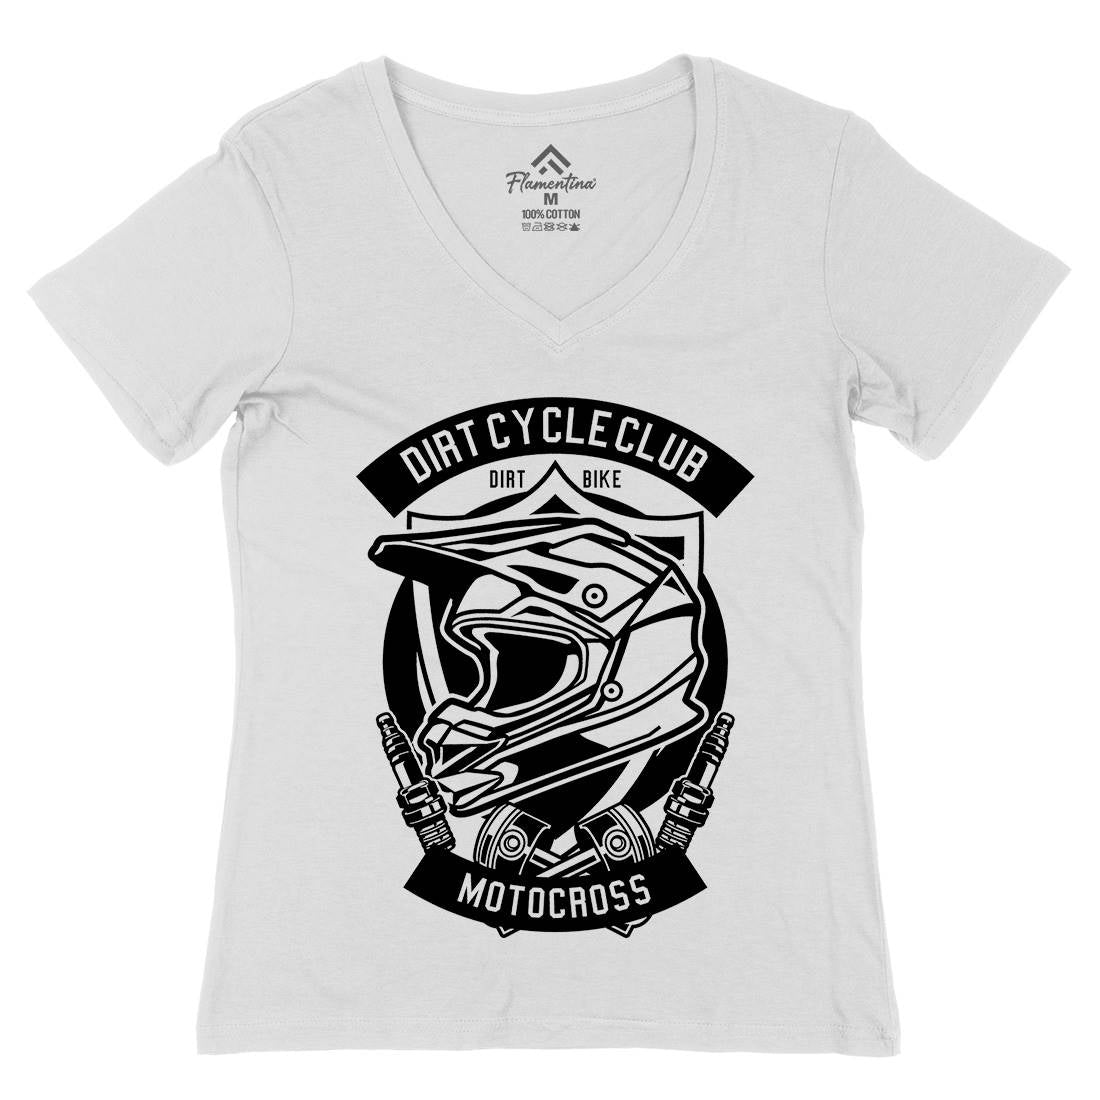 Dirty Cycle Club Womens Organic V-Neck T-Shirt Motorcycles B532